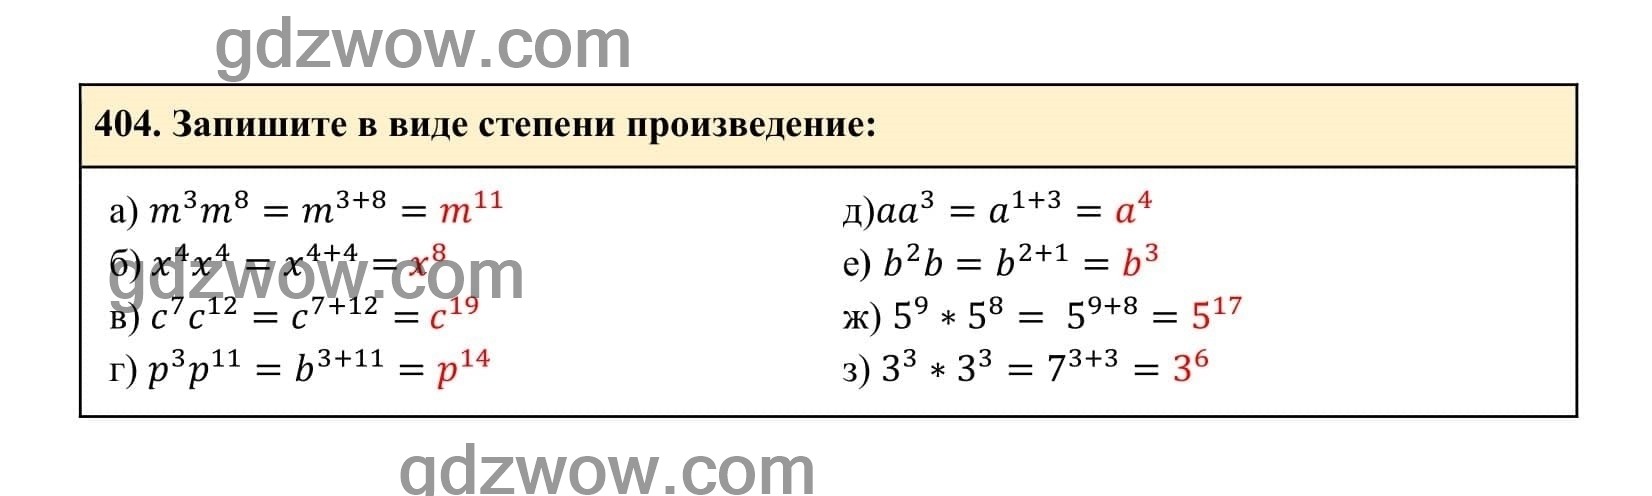 Упражнение 404 - ГДЗ по Алгебре 7 класс Учебник Макарычев (решебник) - GDZwow